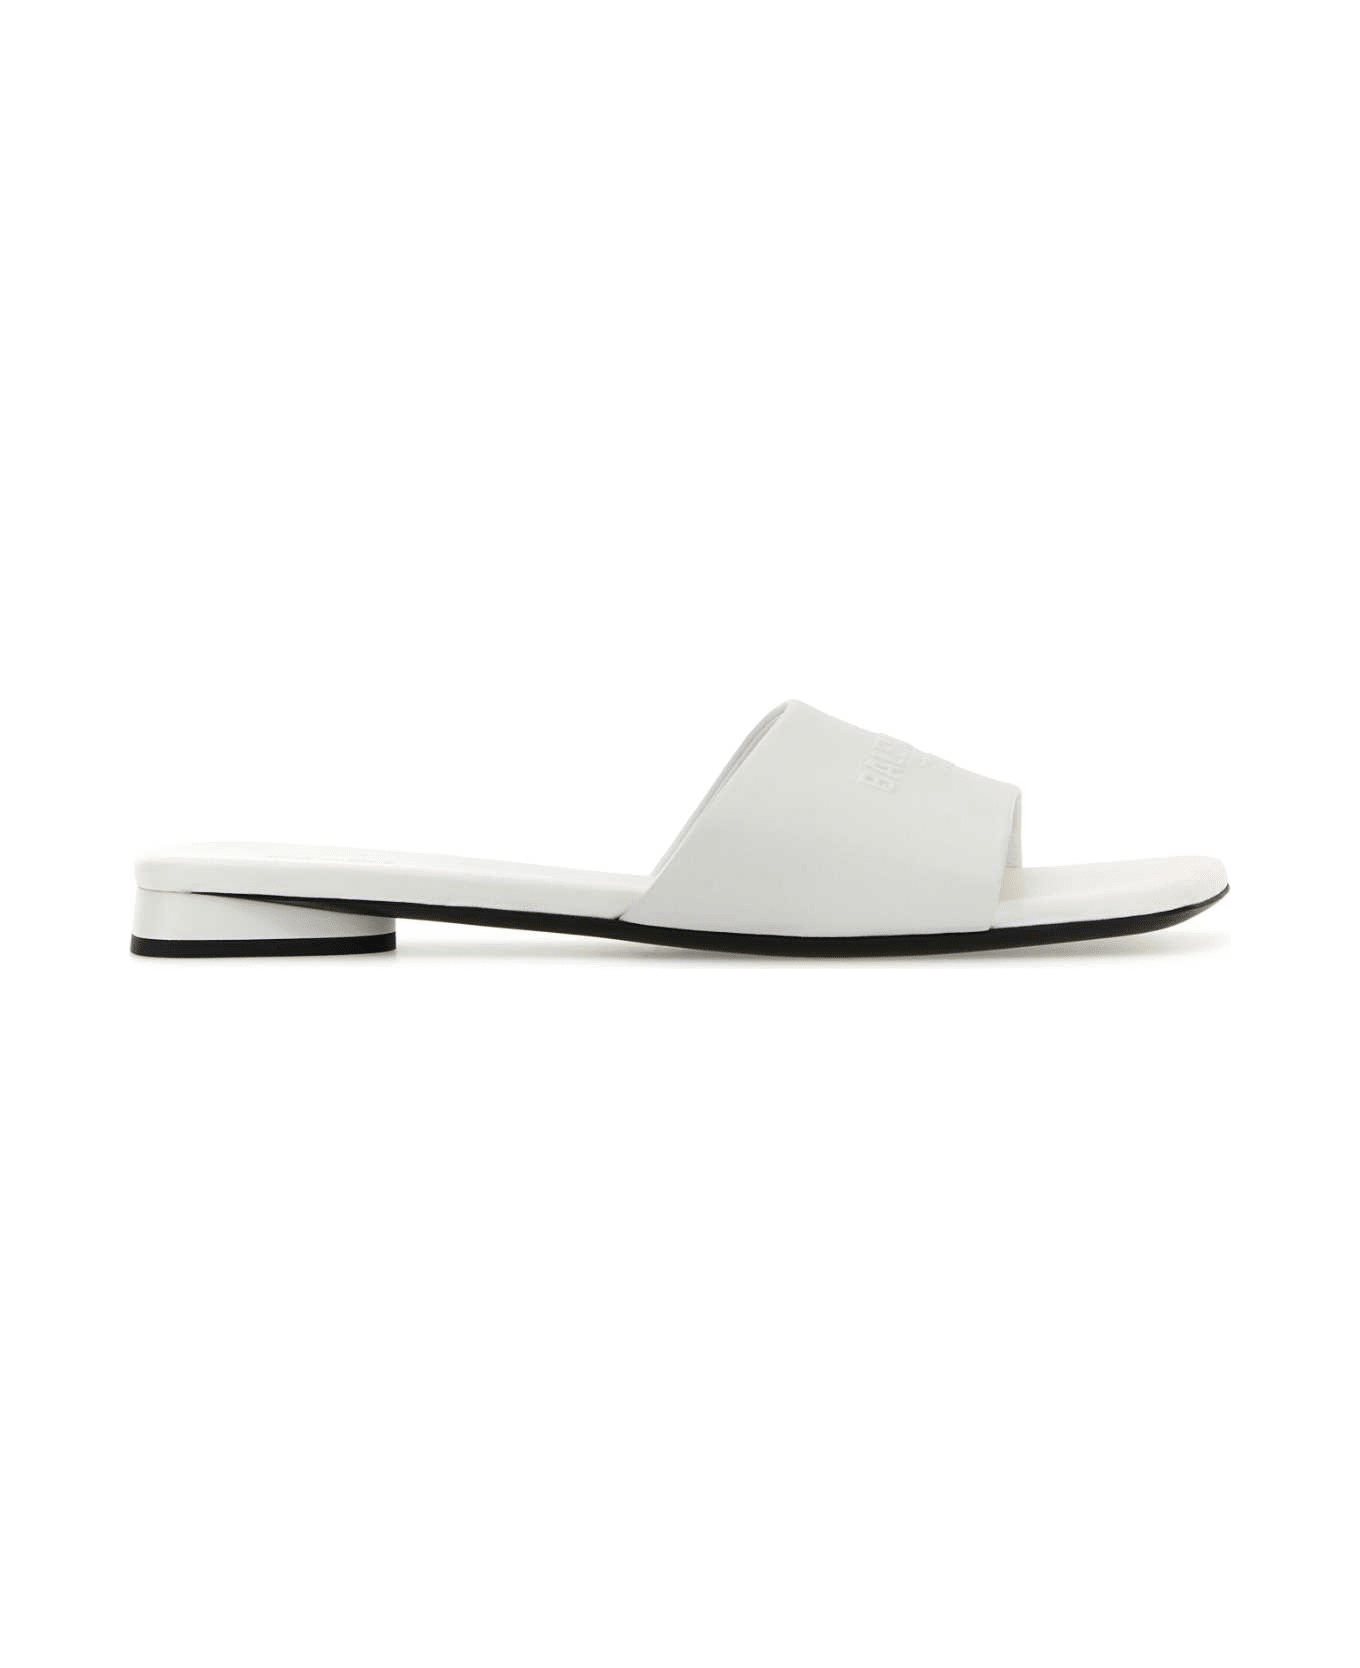 Balenciaga White Leather Duty Free Slippers - WHITE